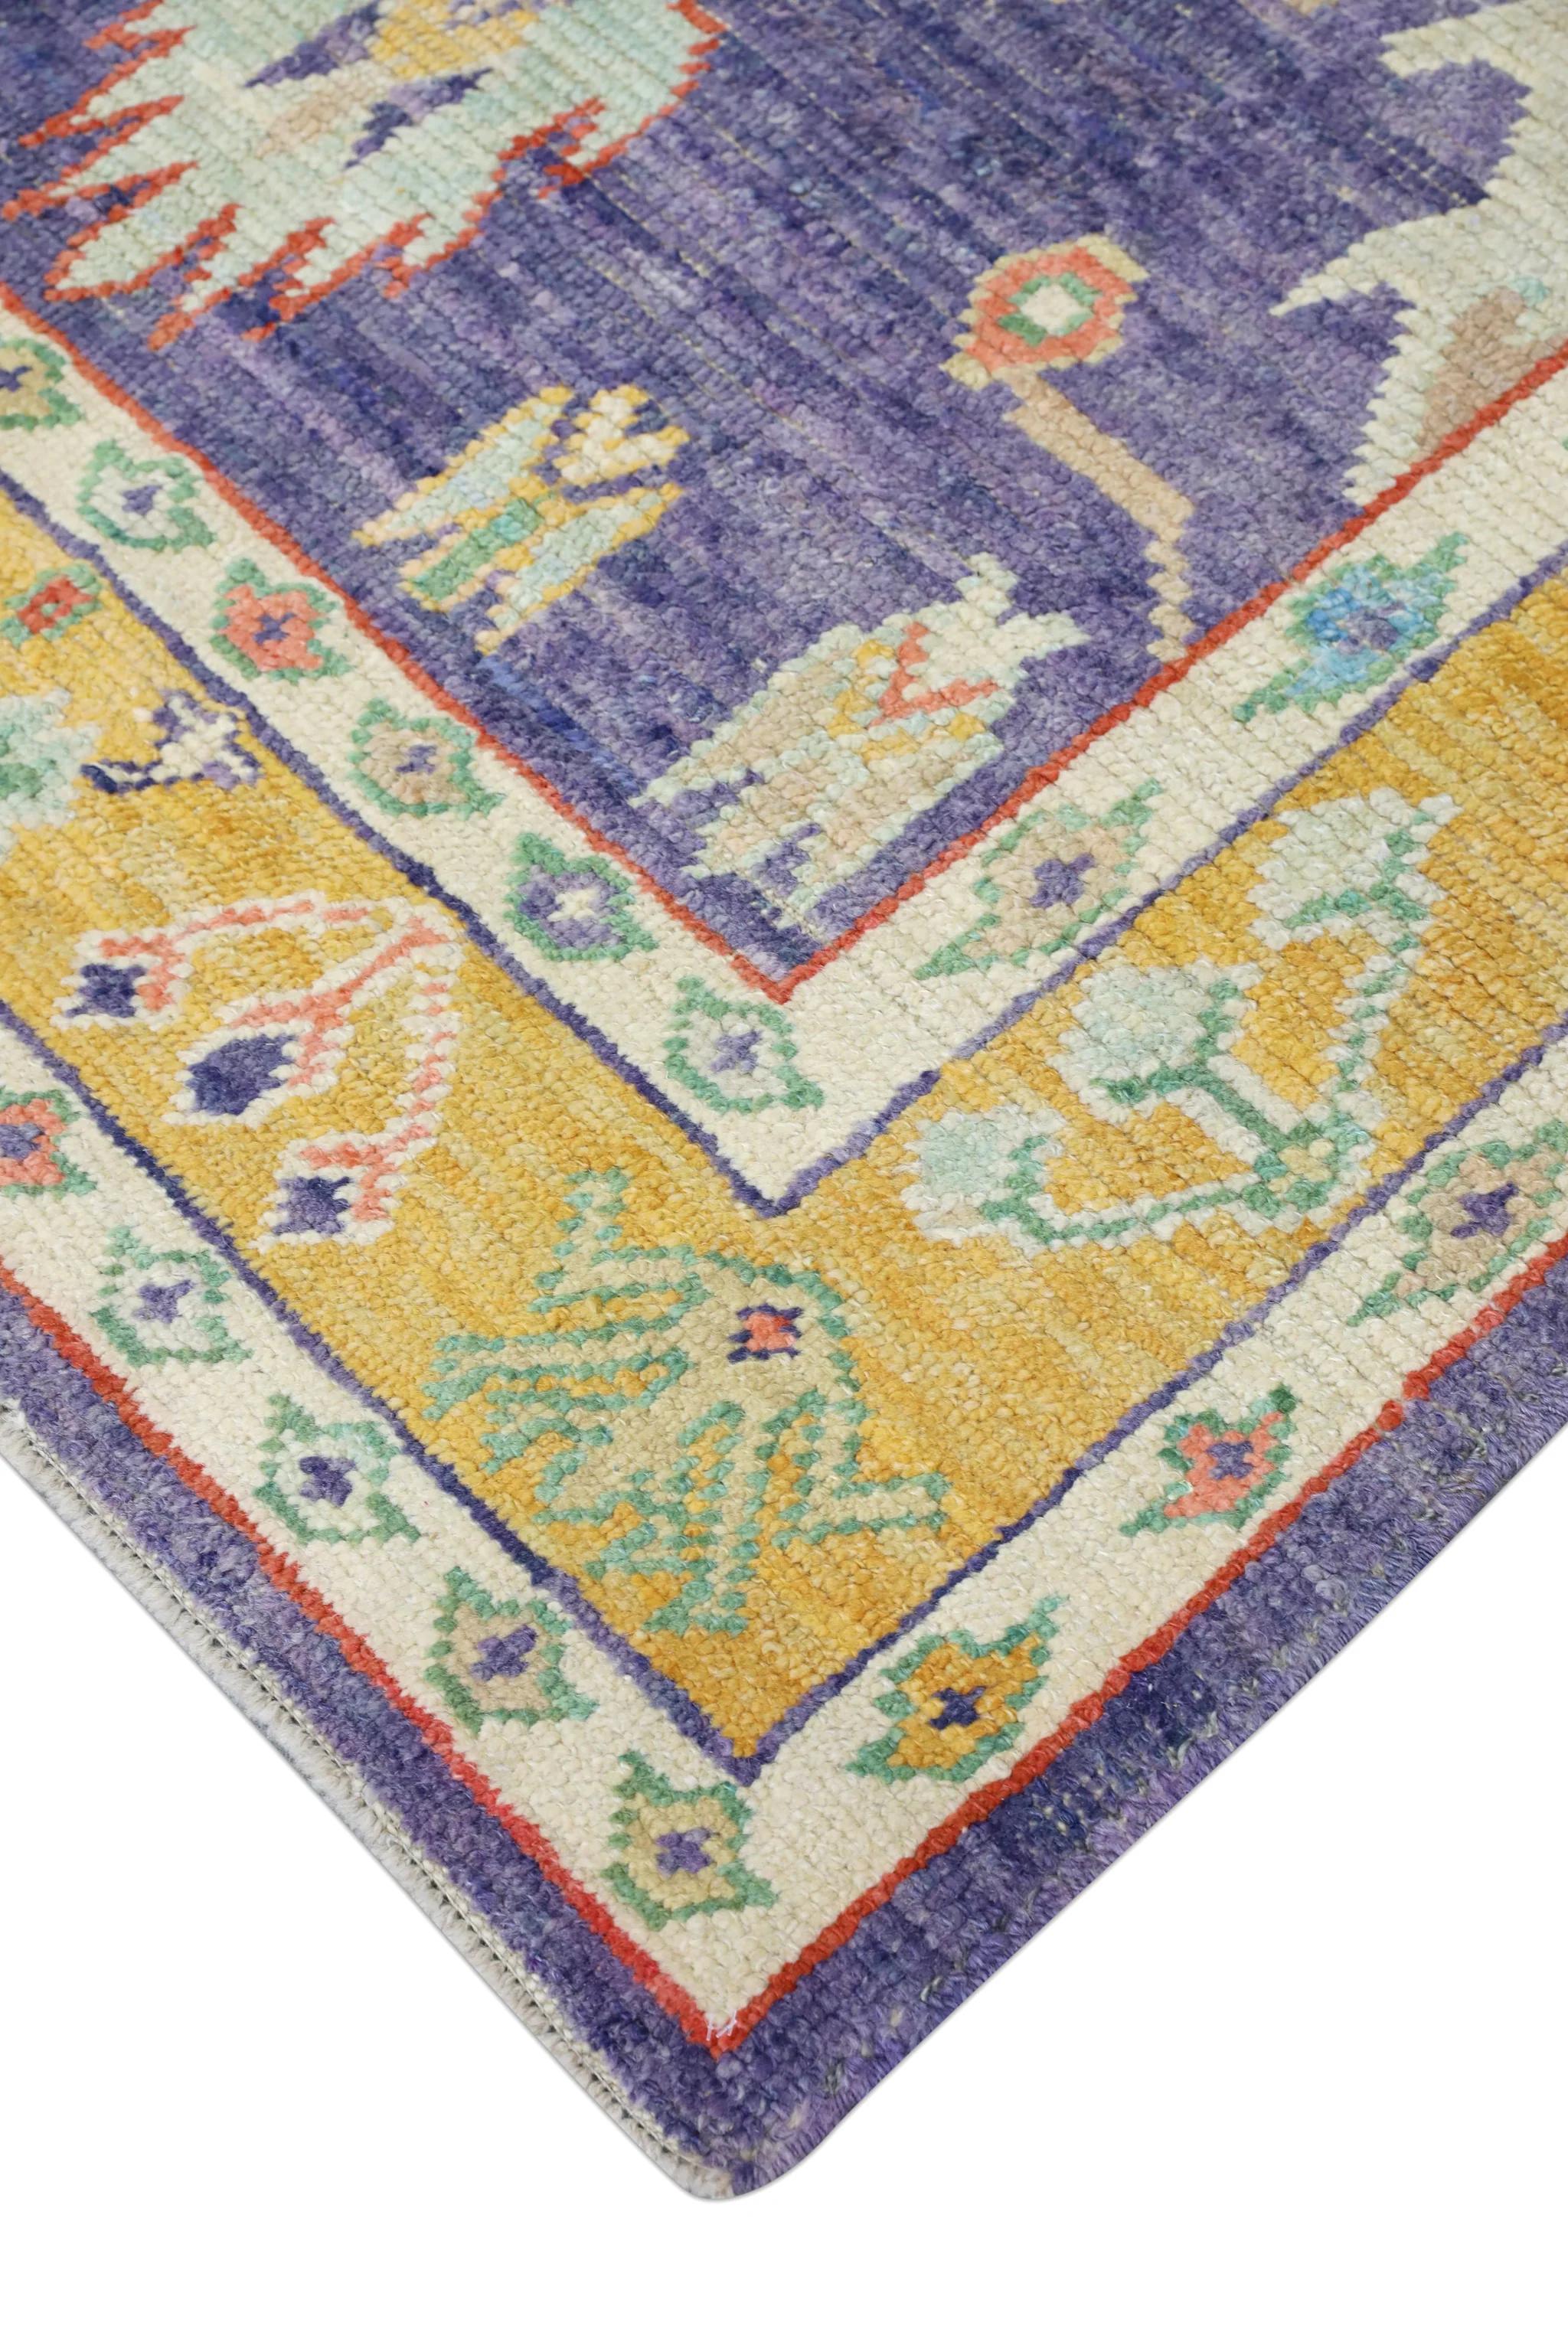 Handwoven Wool Carpet Turkish Oushak Rug 5'4